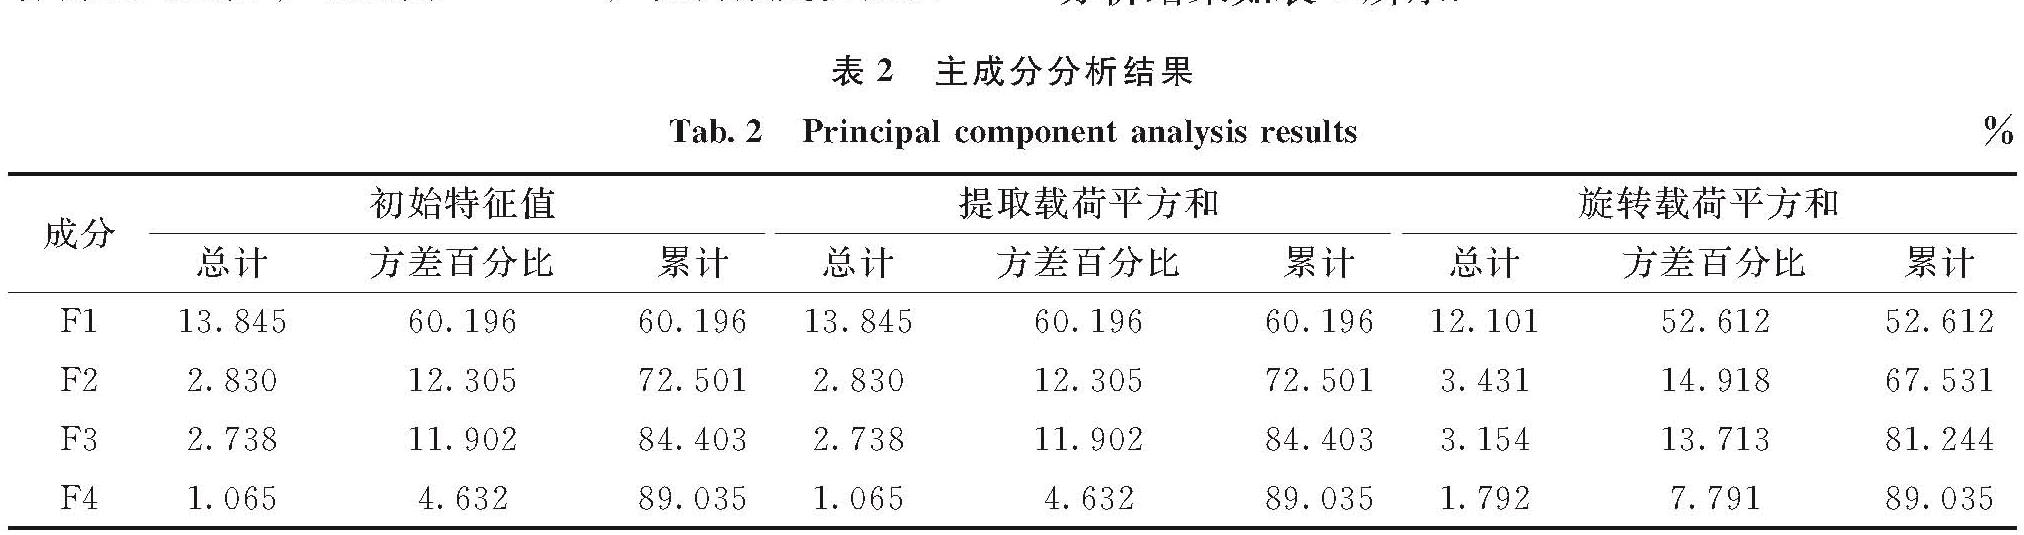 表2 主成分分析结果<br/>Tab.2 Principal component analysis results %